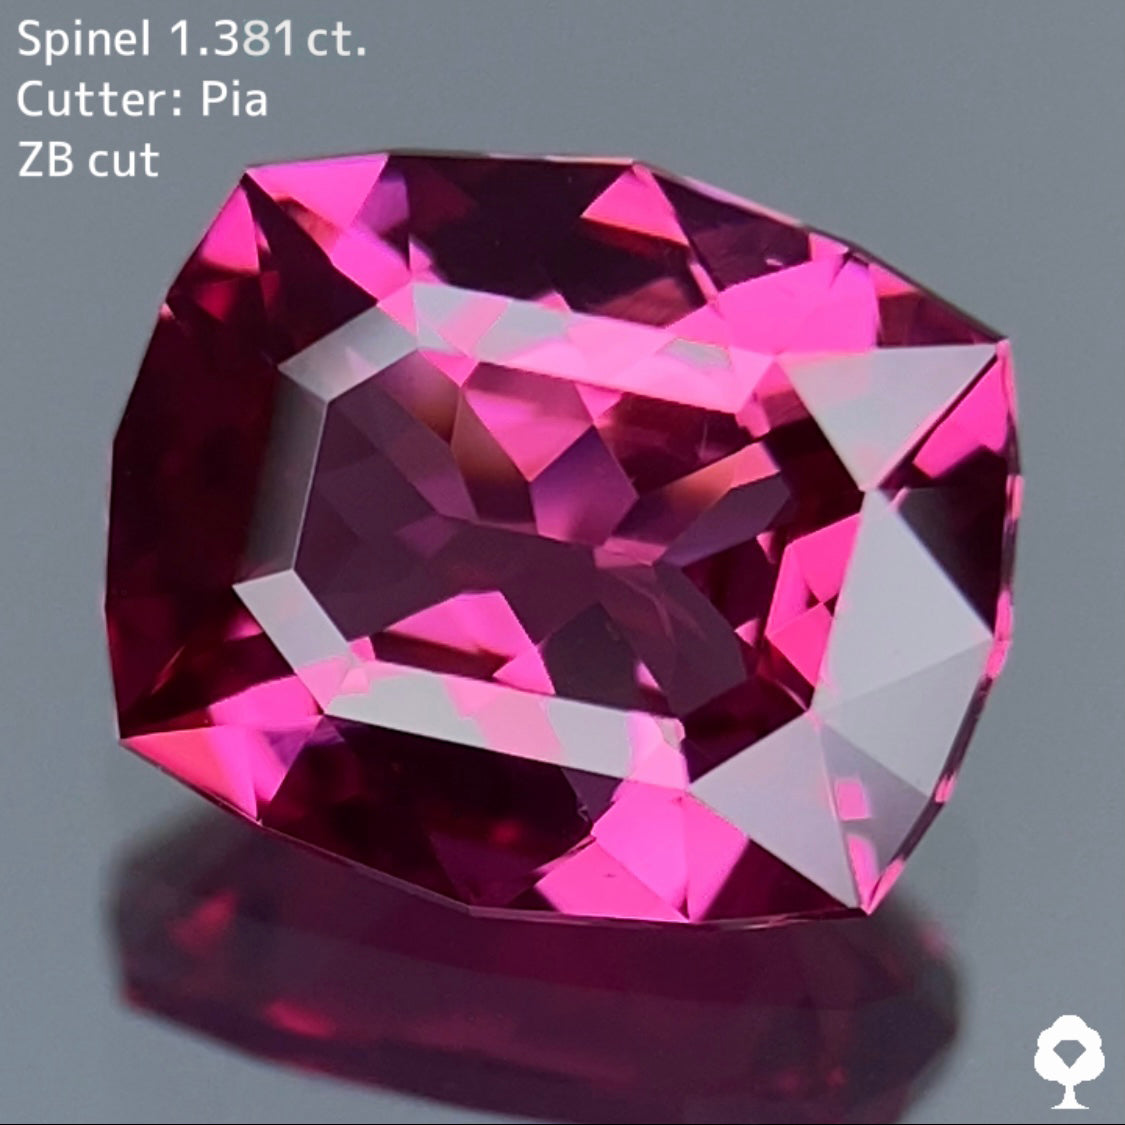 ピンク好きにはたまらない宝石のカタチ浮かぶ美クッション☆スピネル 